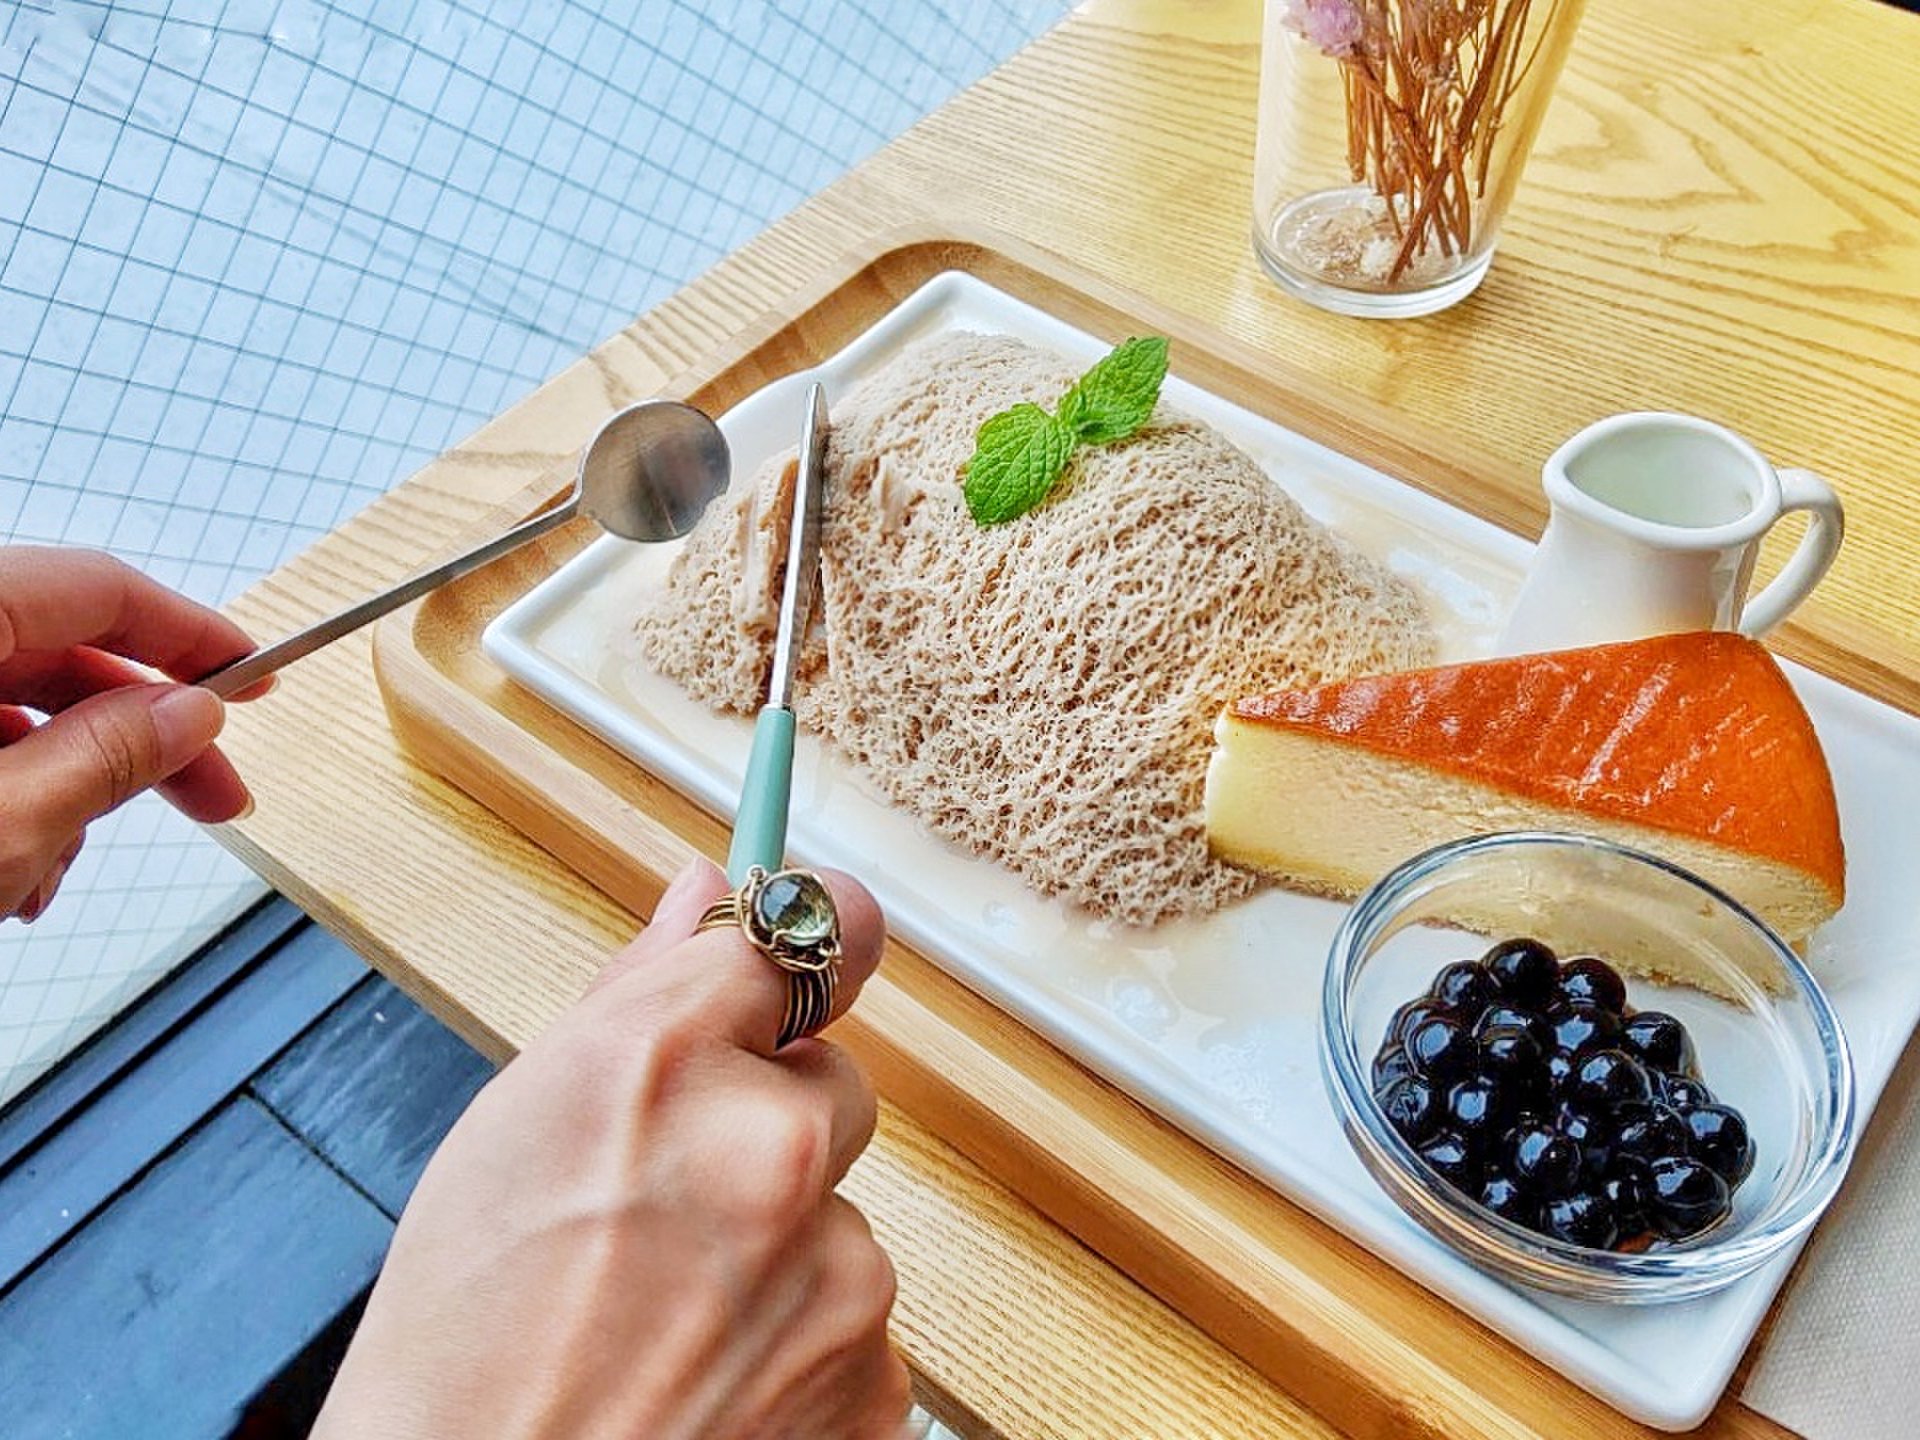 ナイフとフォークで食べるかき氷!?新大久保「Seoul Café」の新感覚スイーツ